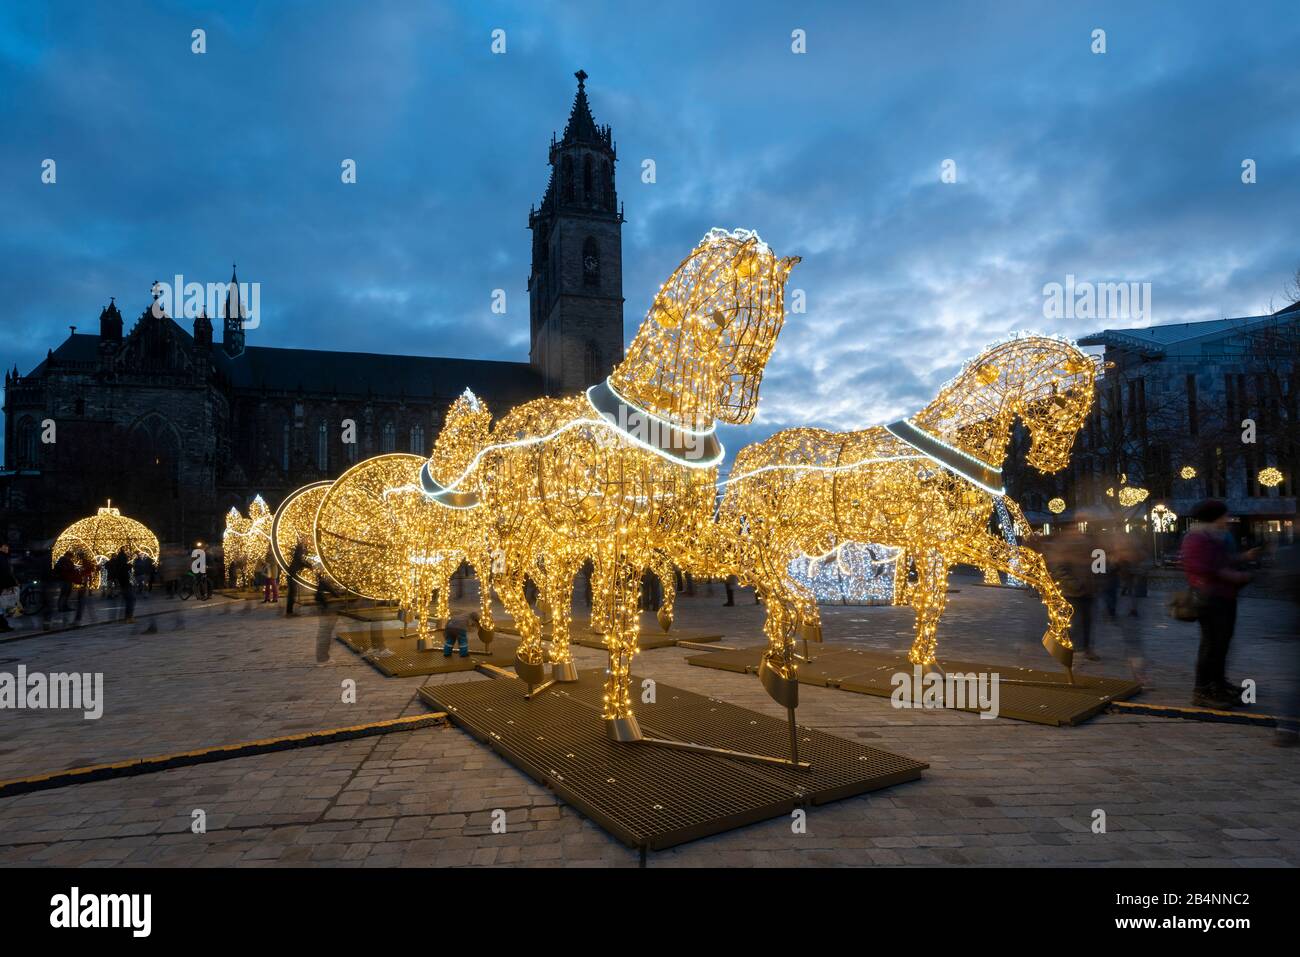 Deutschland, Sachsen-Anhalt, Magdeburg, beleuchtete Pferde stehen auf dem Domplatz, sie zeigen den Vakuumversuch des Physikers Otto-von-Guericke Stock Photo